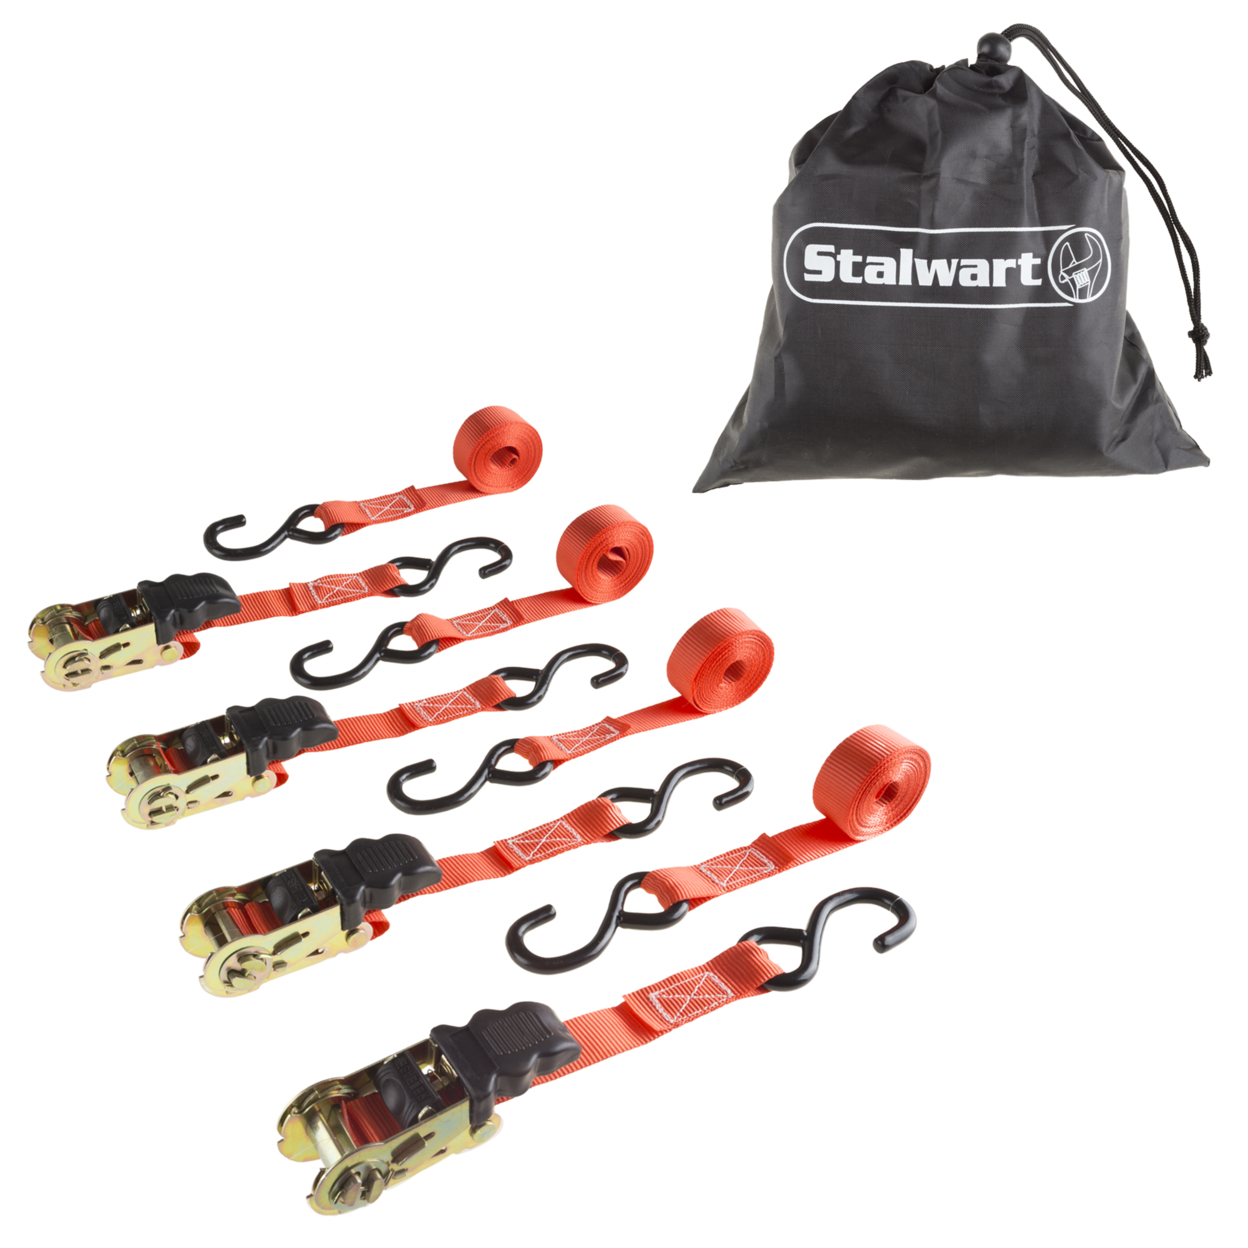 Stalwart 4 Pack Ratchet Tie Down Straps - 10 Ft. - 500 Lb Load